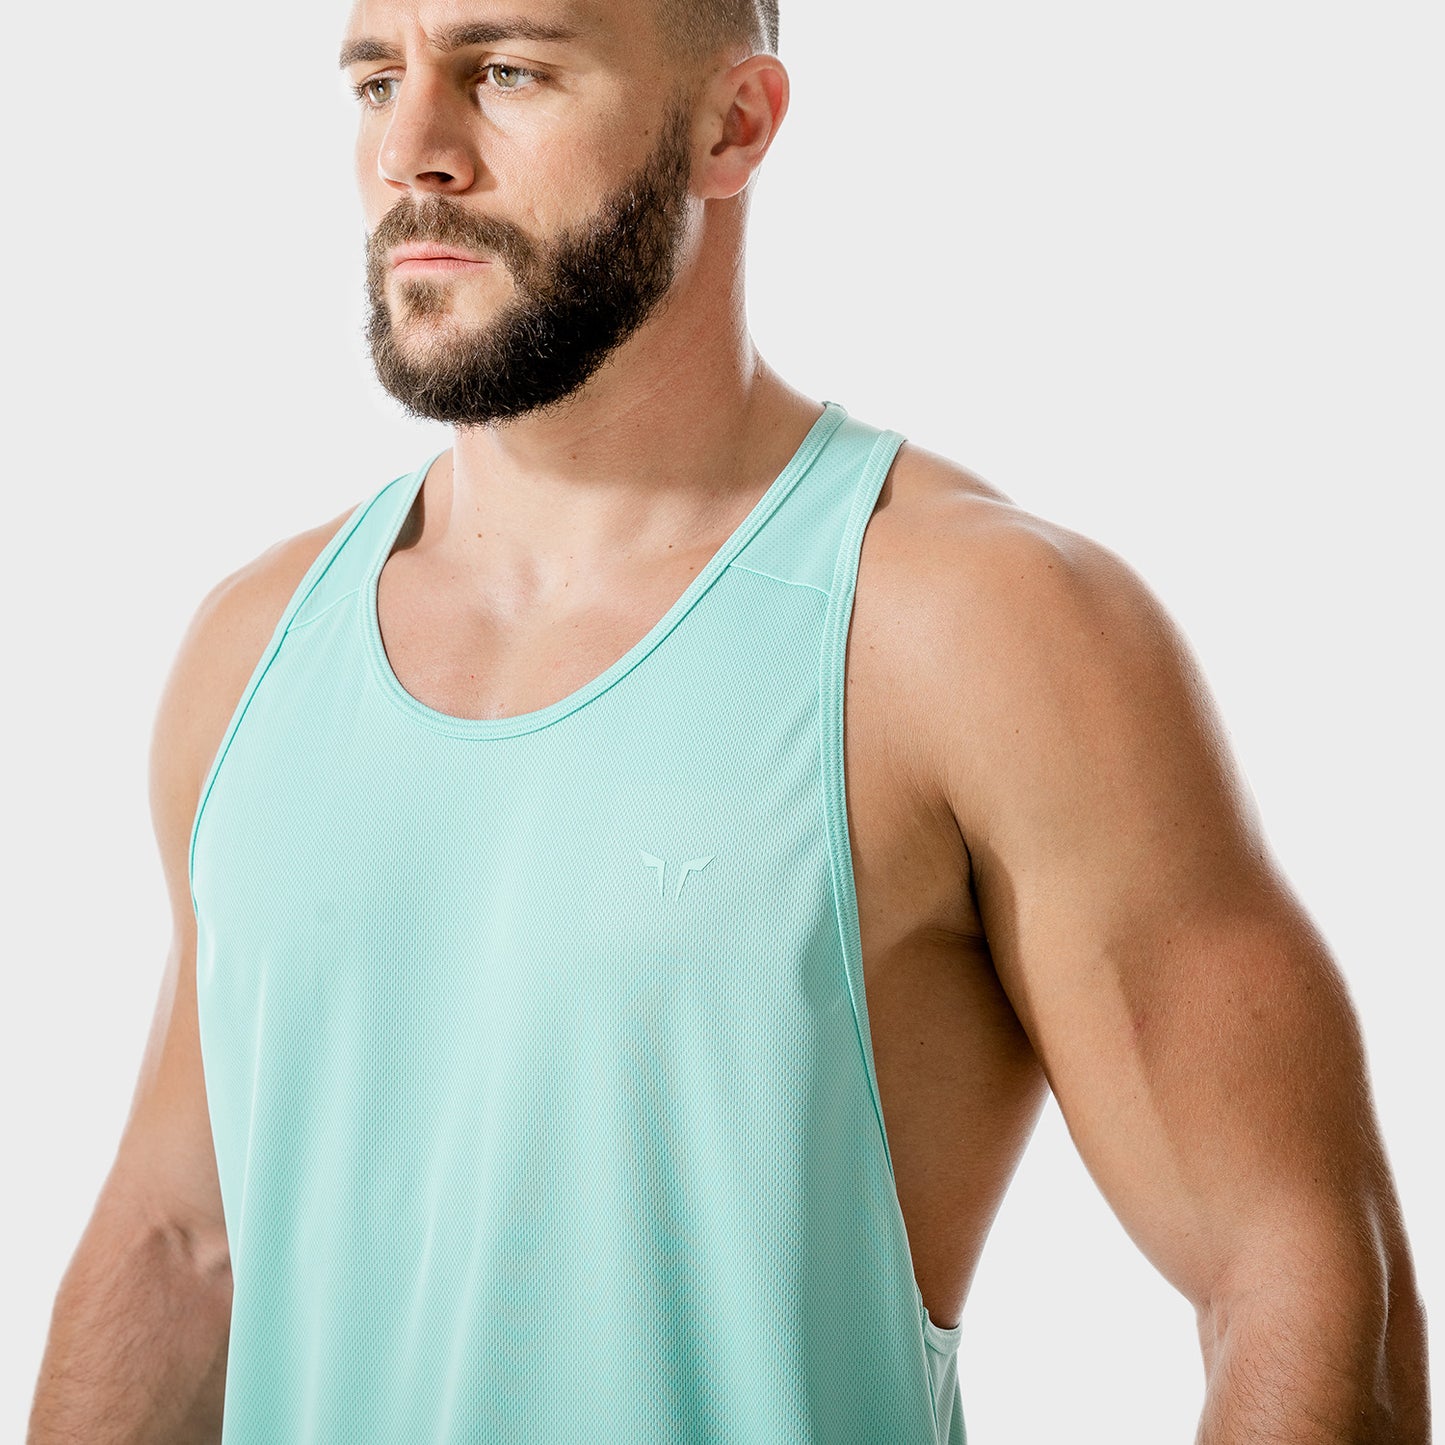 squatwolf-gym-wear-lab360-weightless-stringer-aqua-stringer-vests-for-men